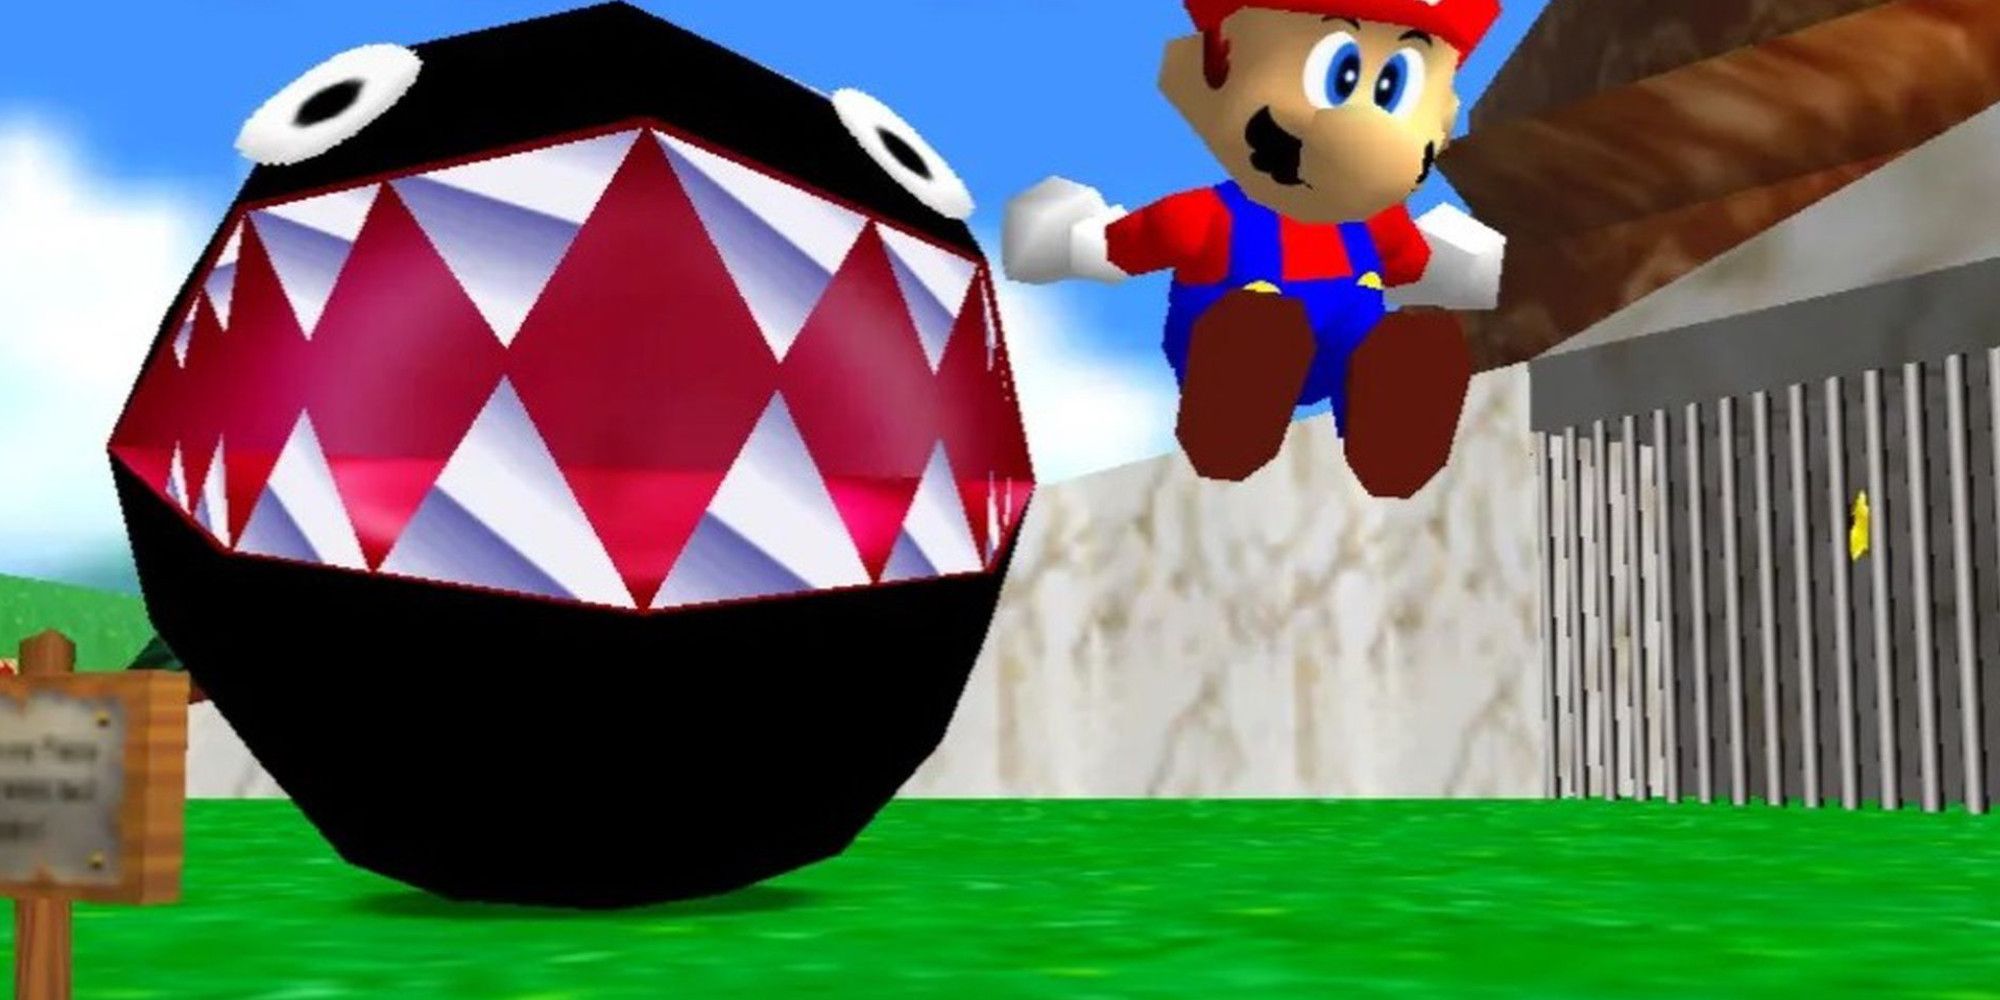 Mario in Super Mario 64